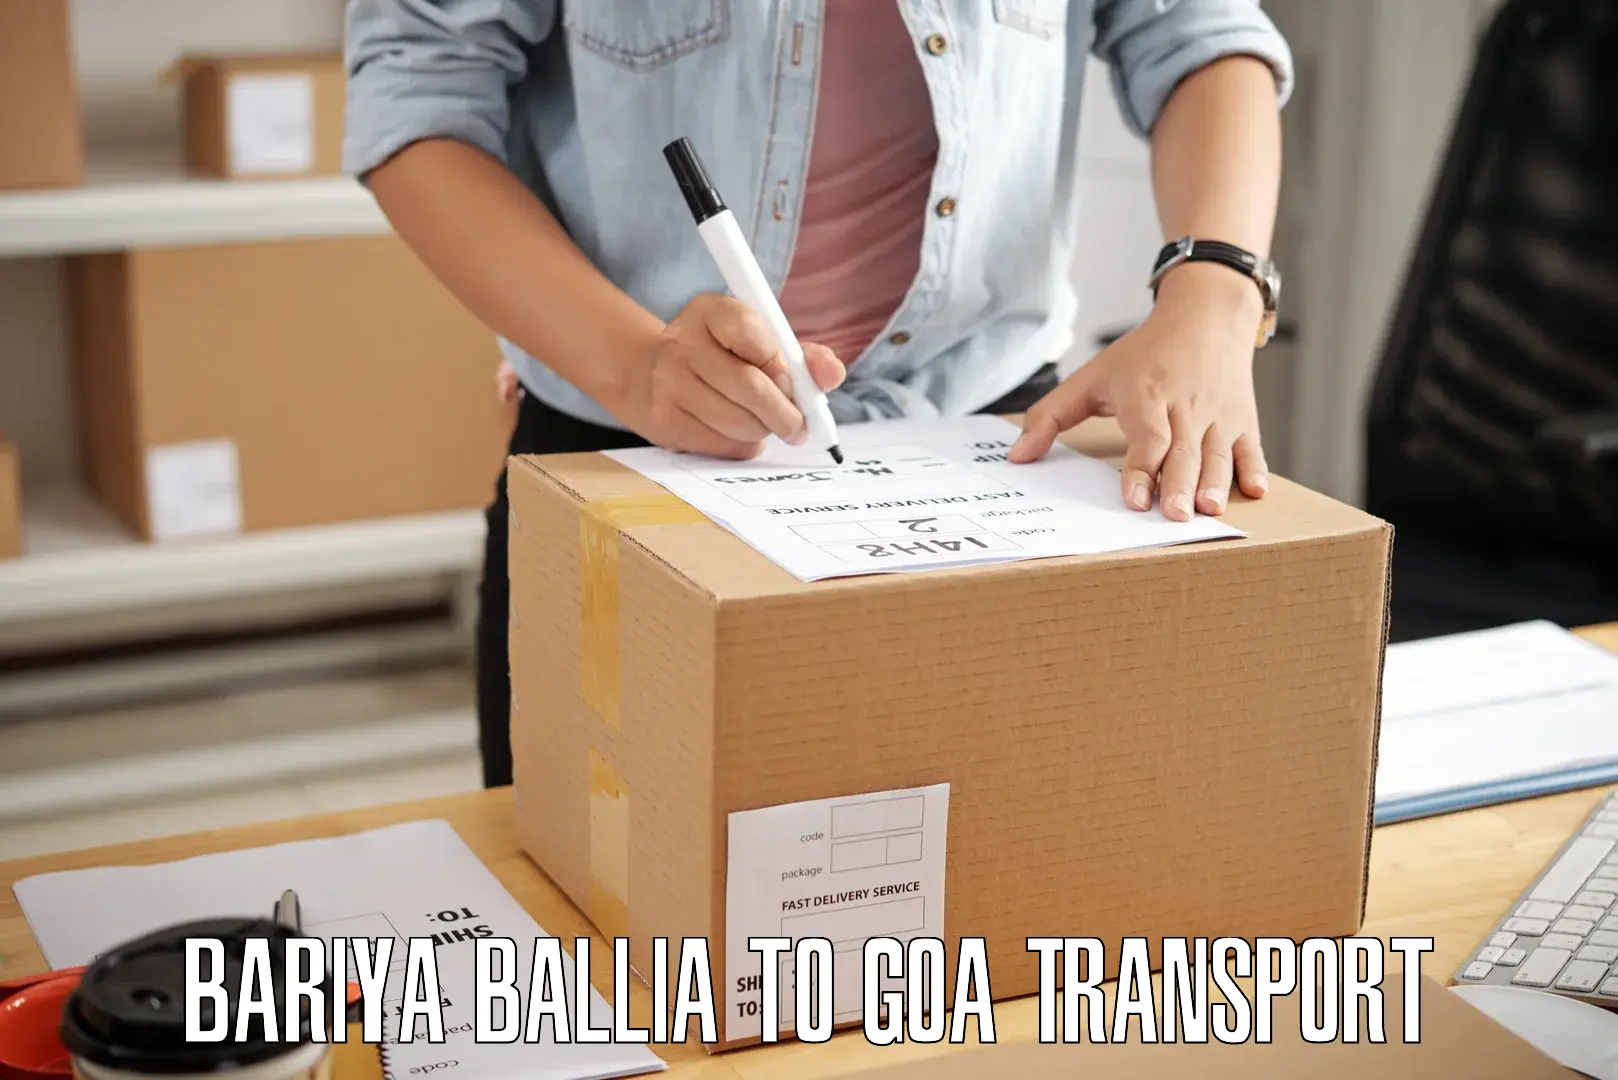 Domestic transport services Bariya Ballia to Canacona